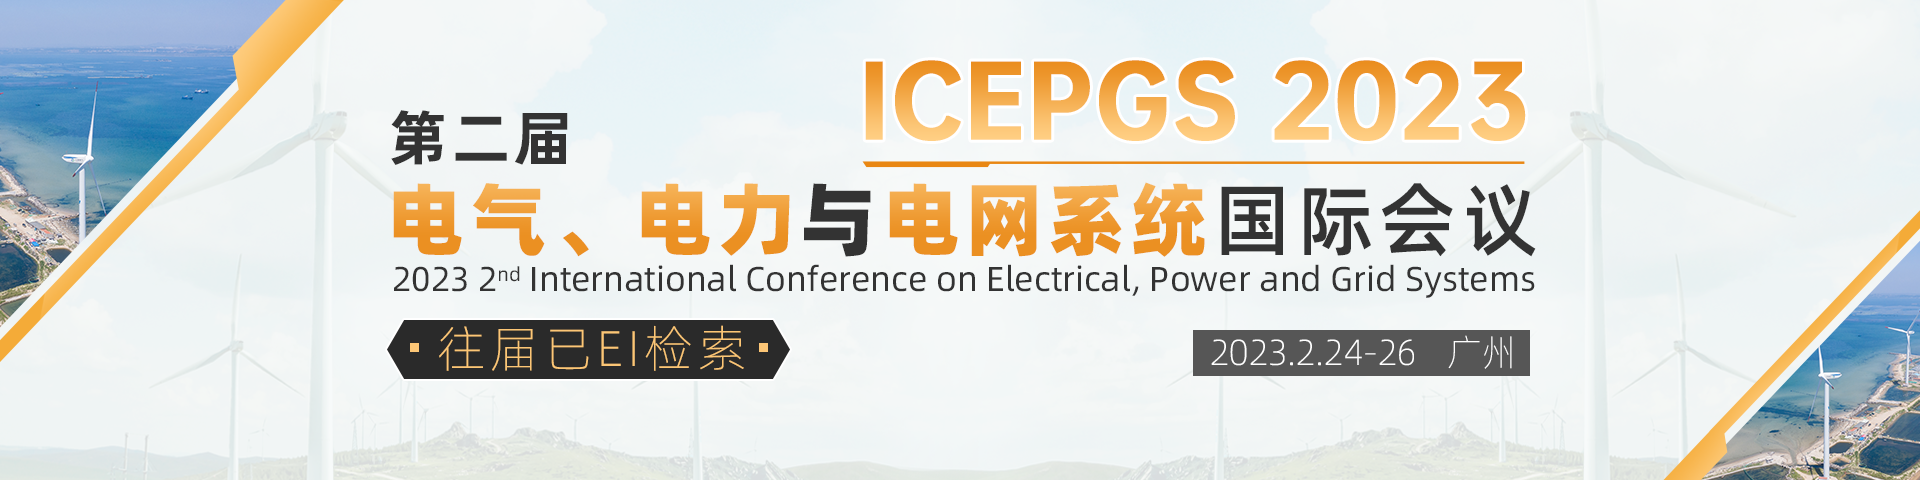 2月广州-ICEPGS-会议官网.png